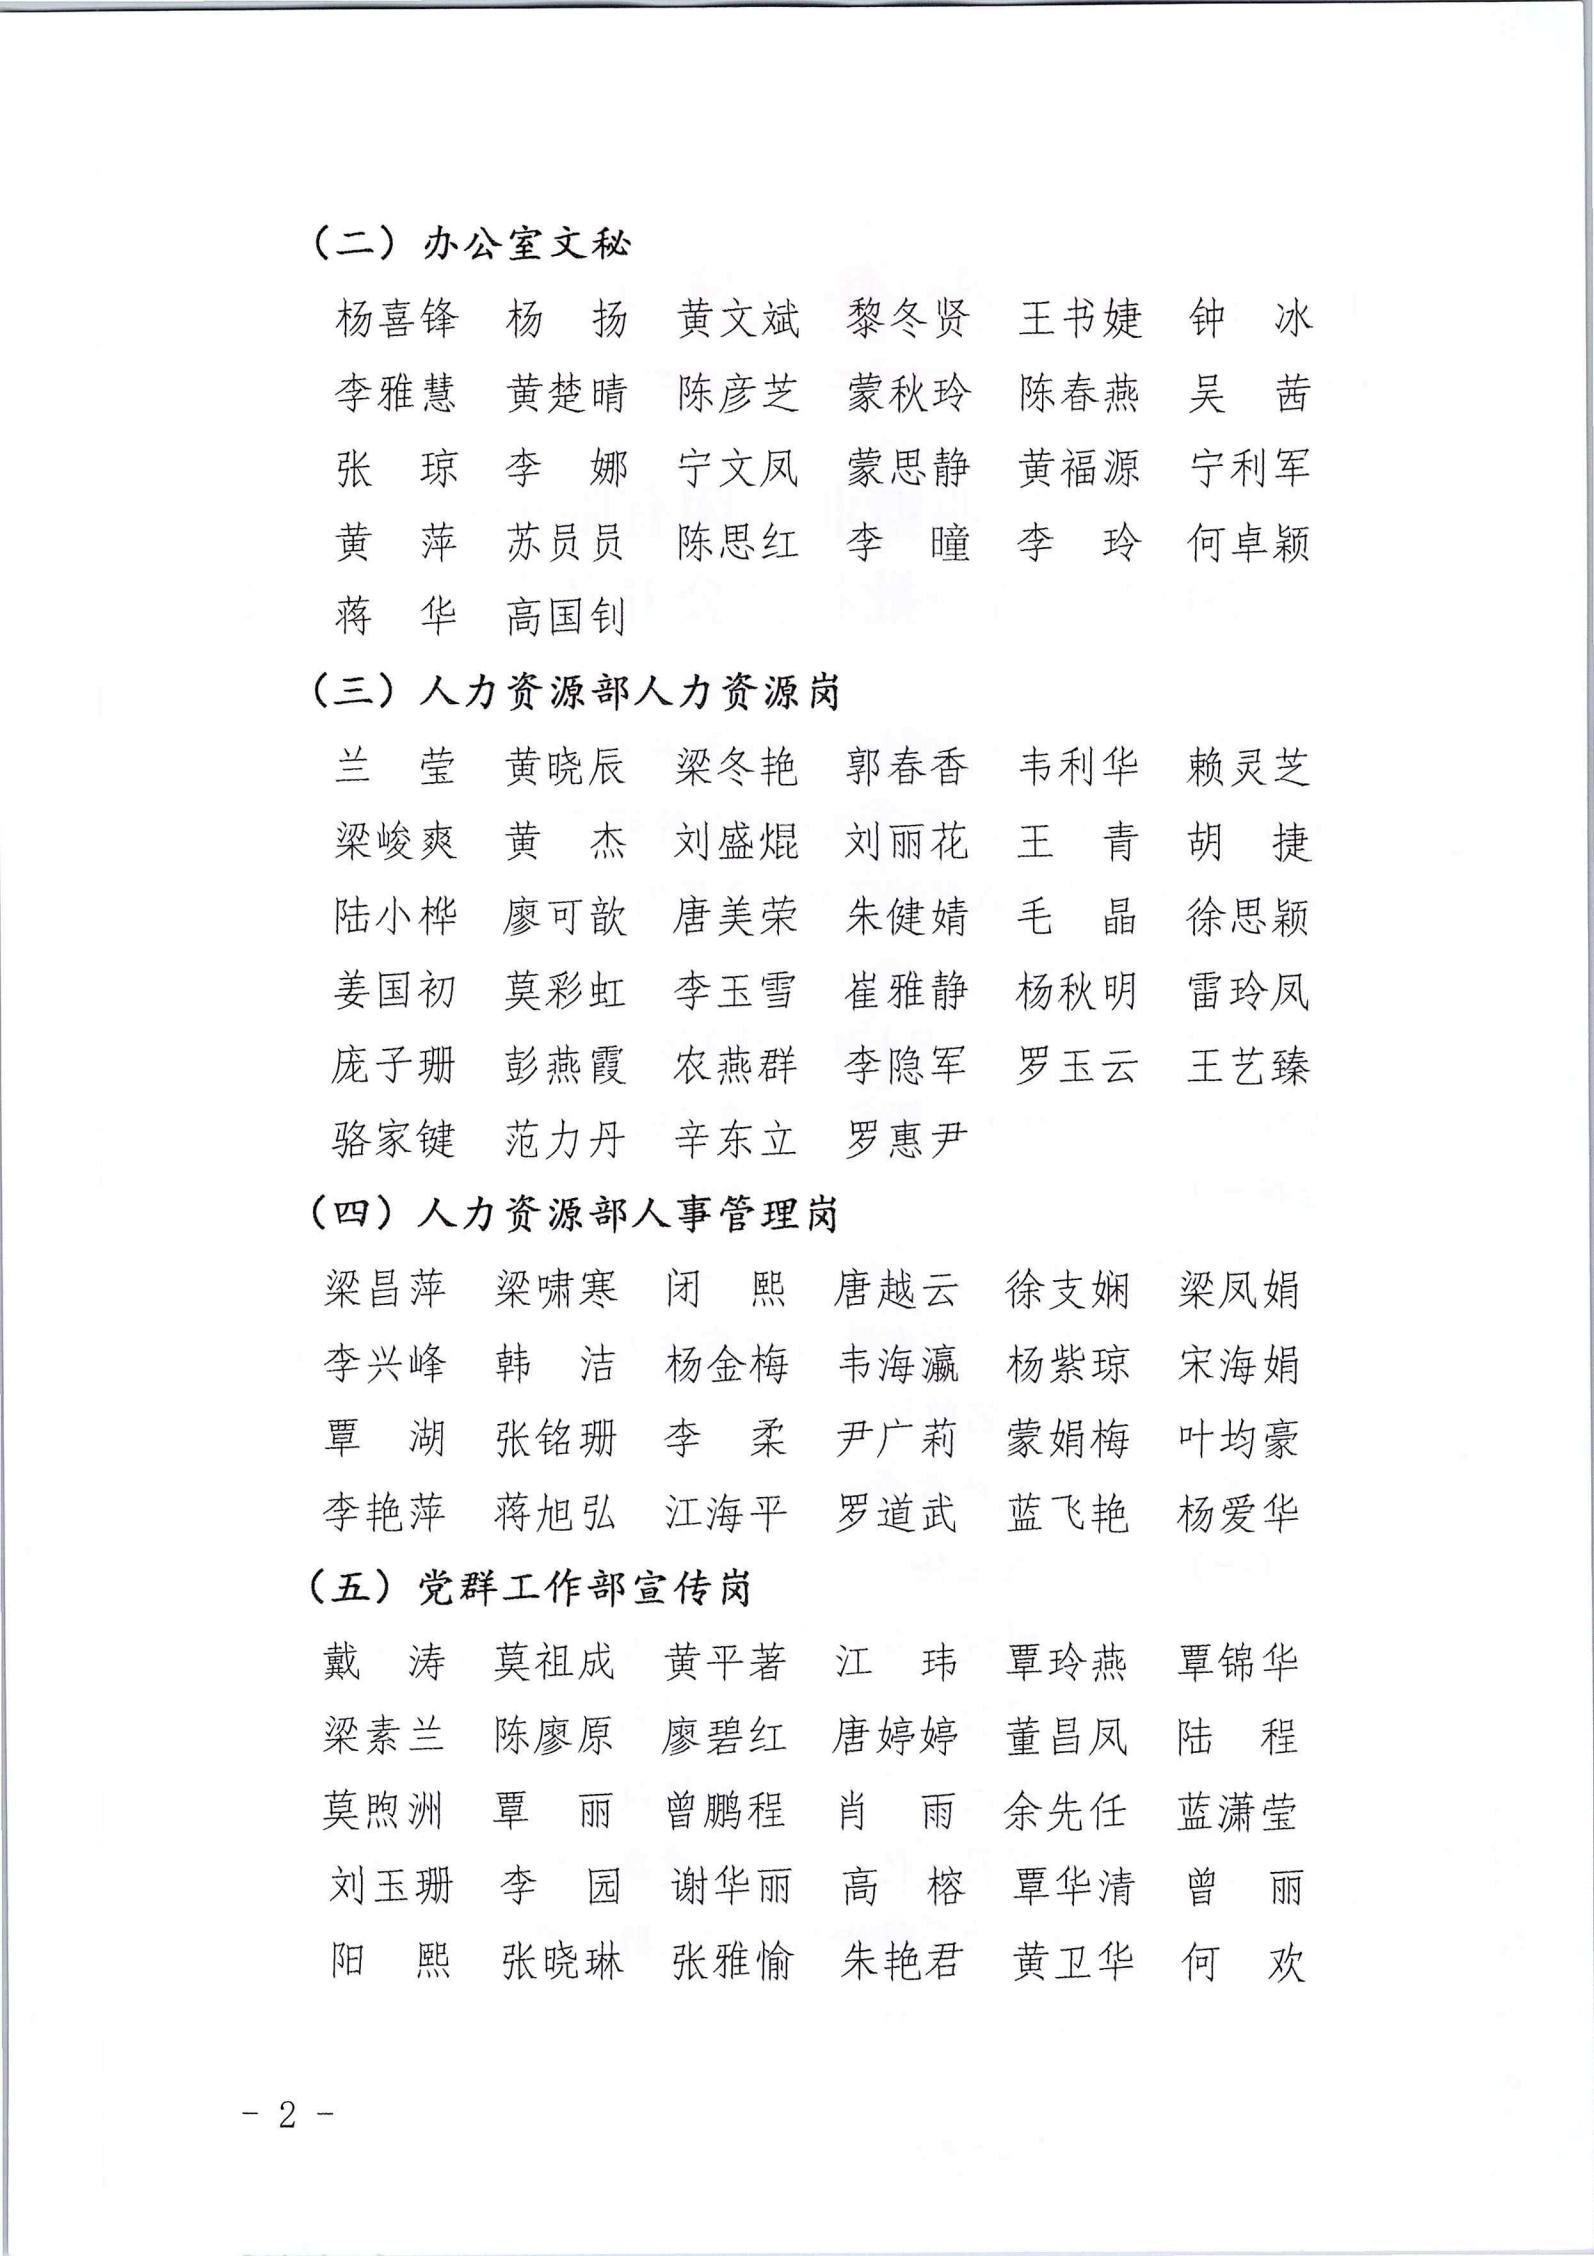 江南平台(中国)有限公司有限公司2022年第一批社会公开招聘笔试公告_01.jpg